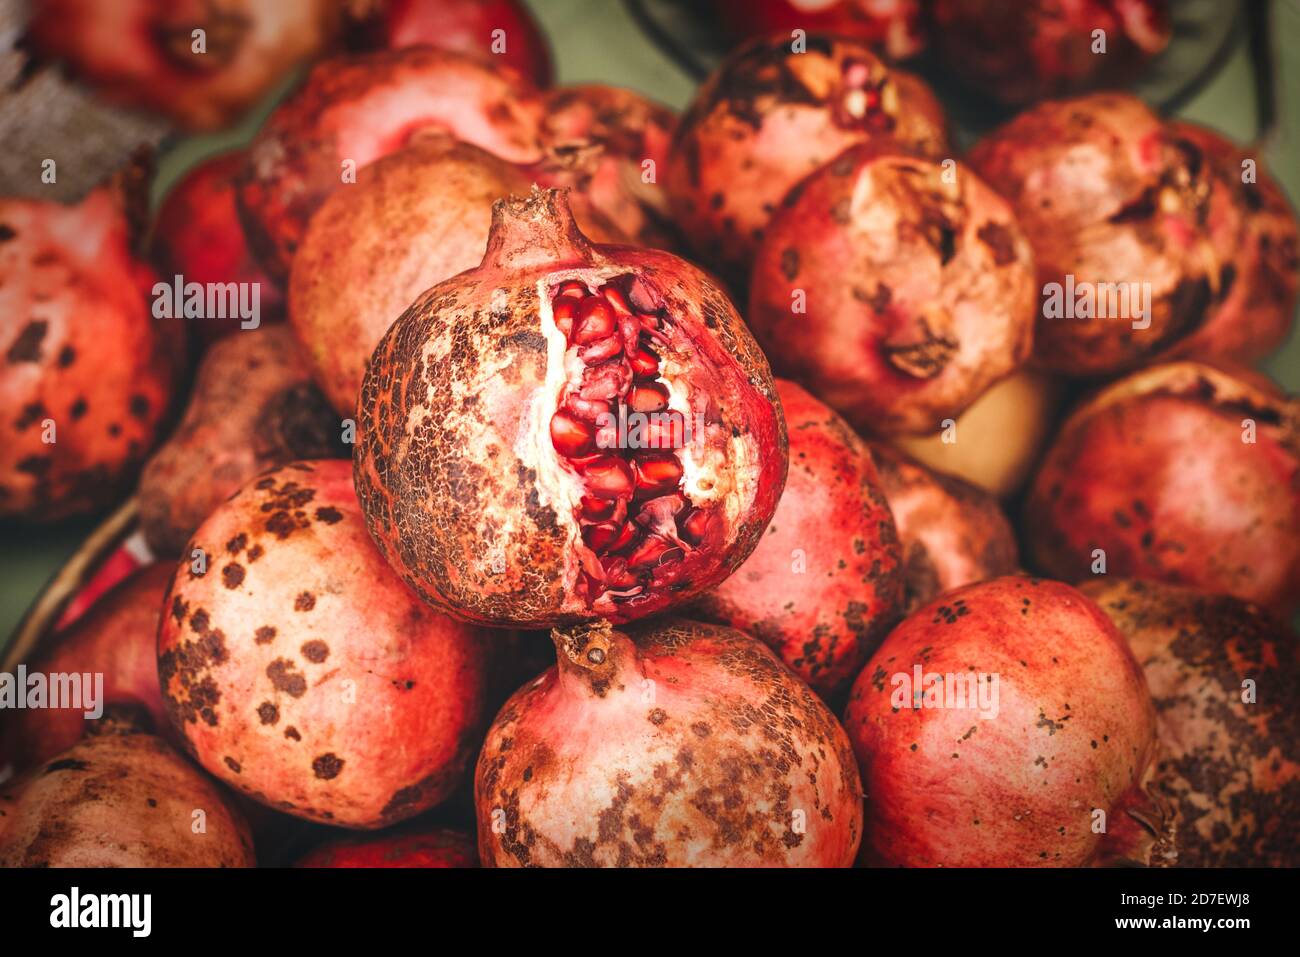 Reife Granatapfelfrüchte im Marktregal, überreifer Granatapfel liegt oben Stockfoto